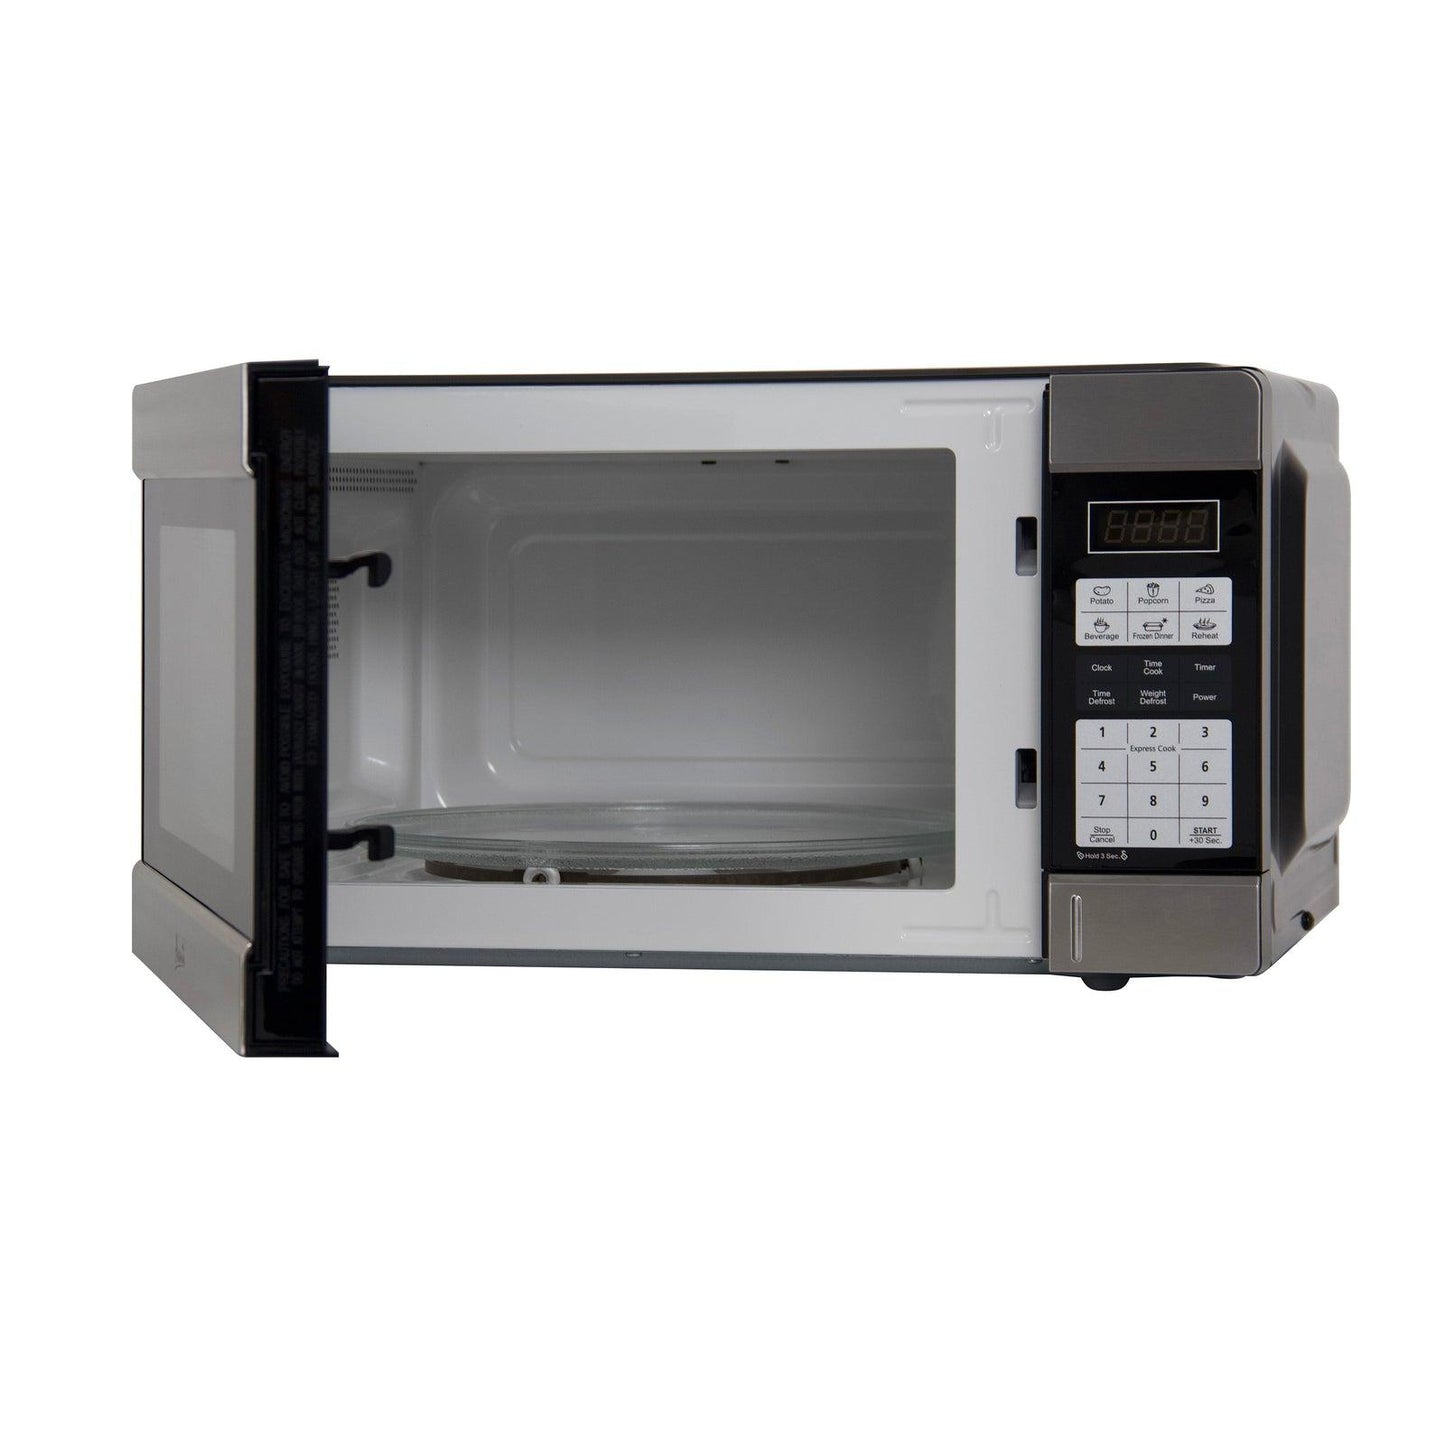 Avanti MT113K3S 1.1 Cu. Ft. Microwave Oven